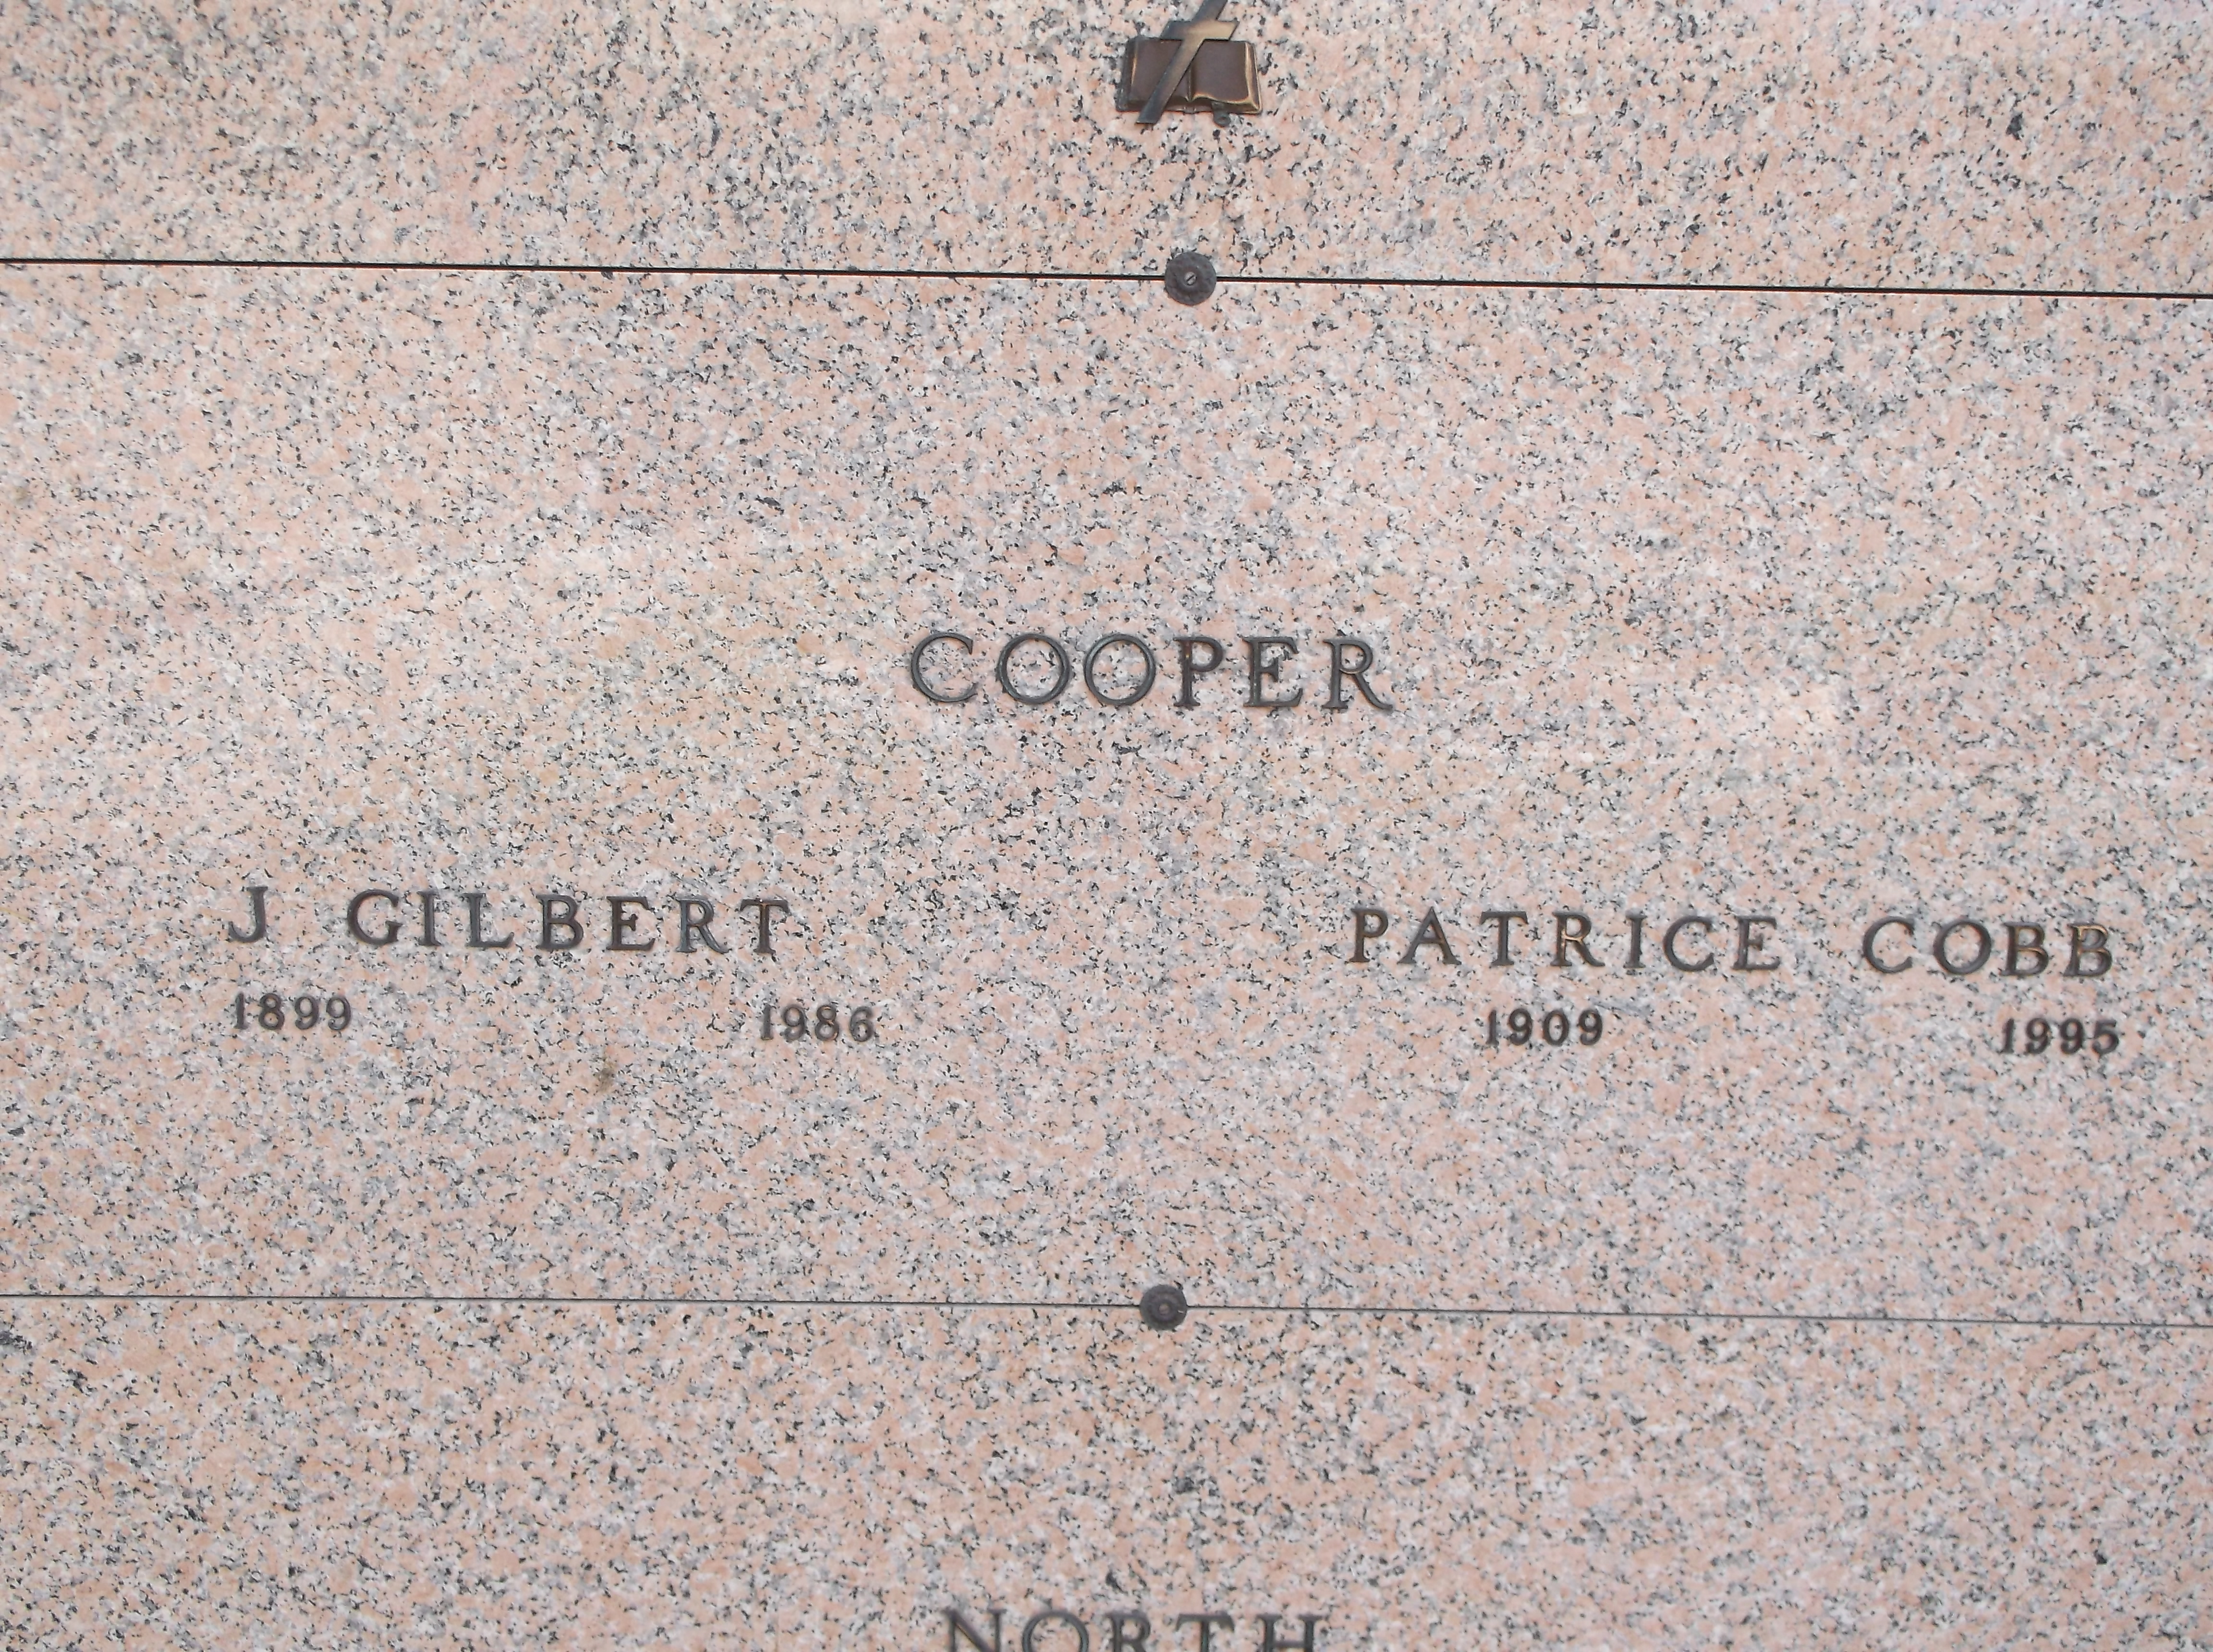 Patrice Cobb Cooper